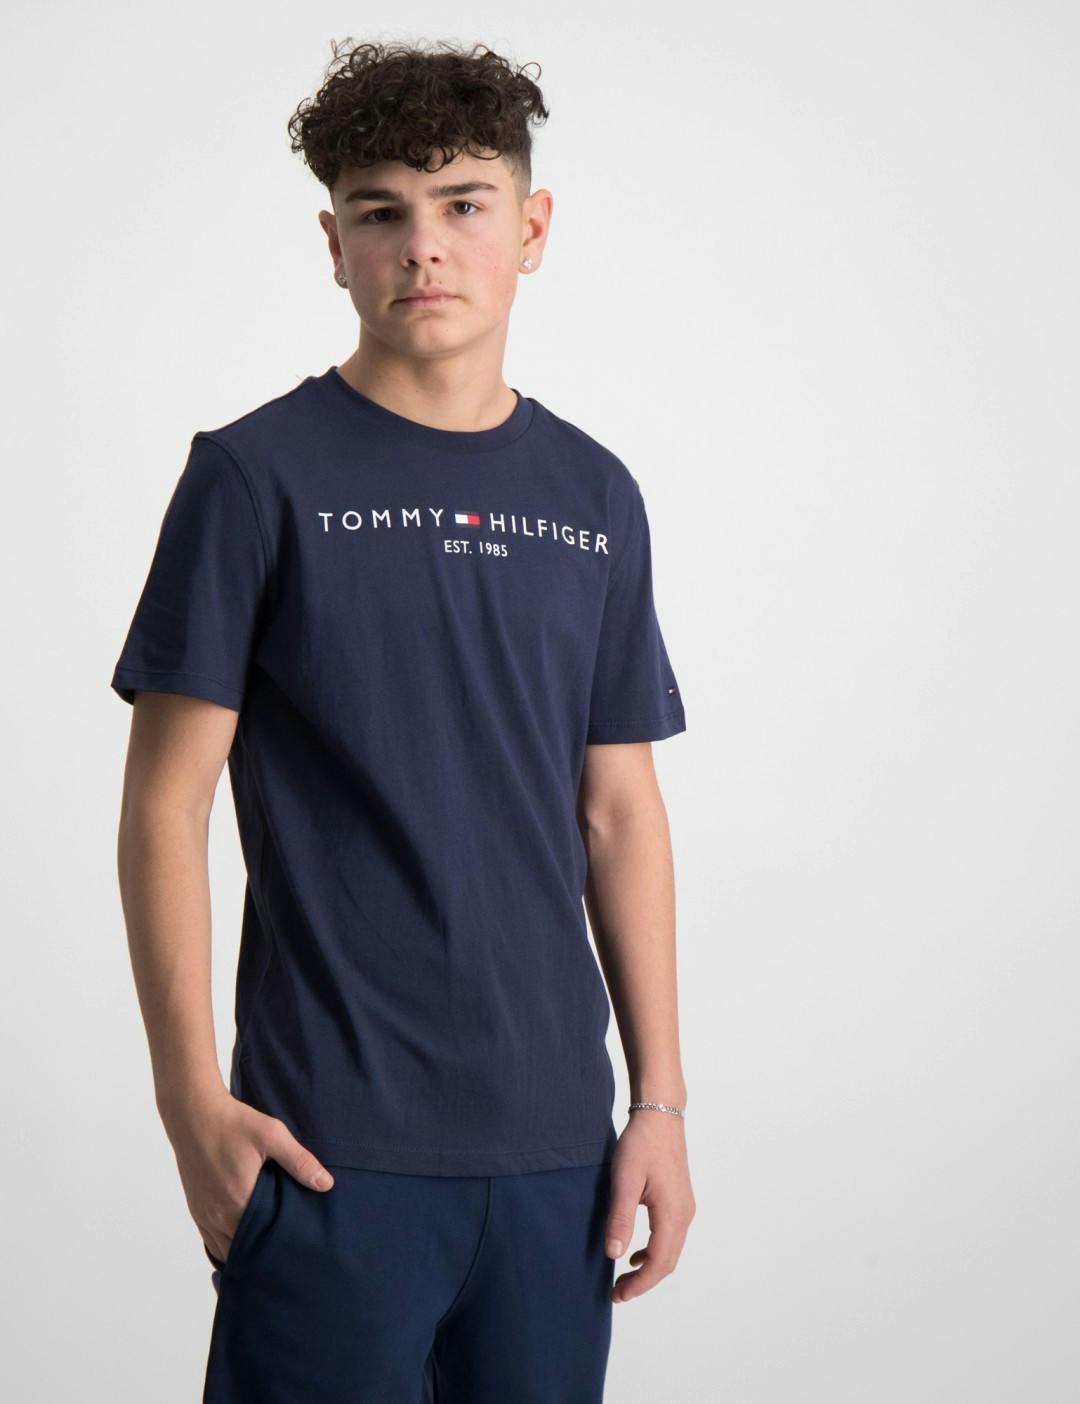 Tommy Hilfiger tøj til børn unge | Kids Brand Store